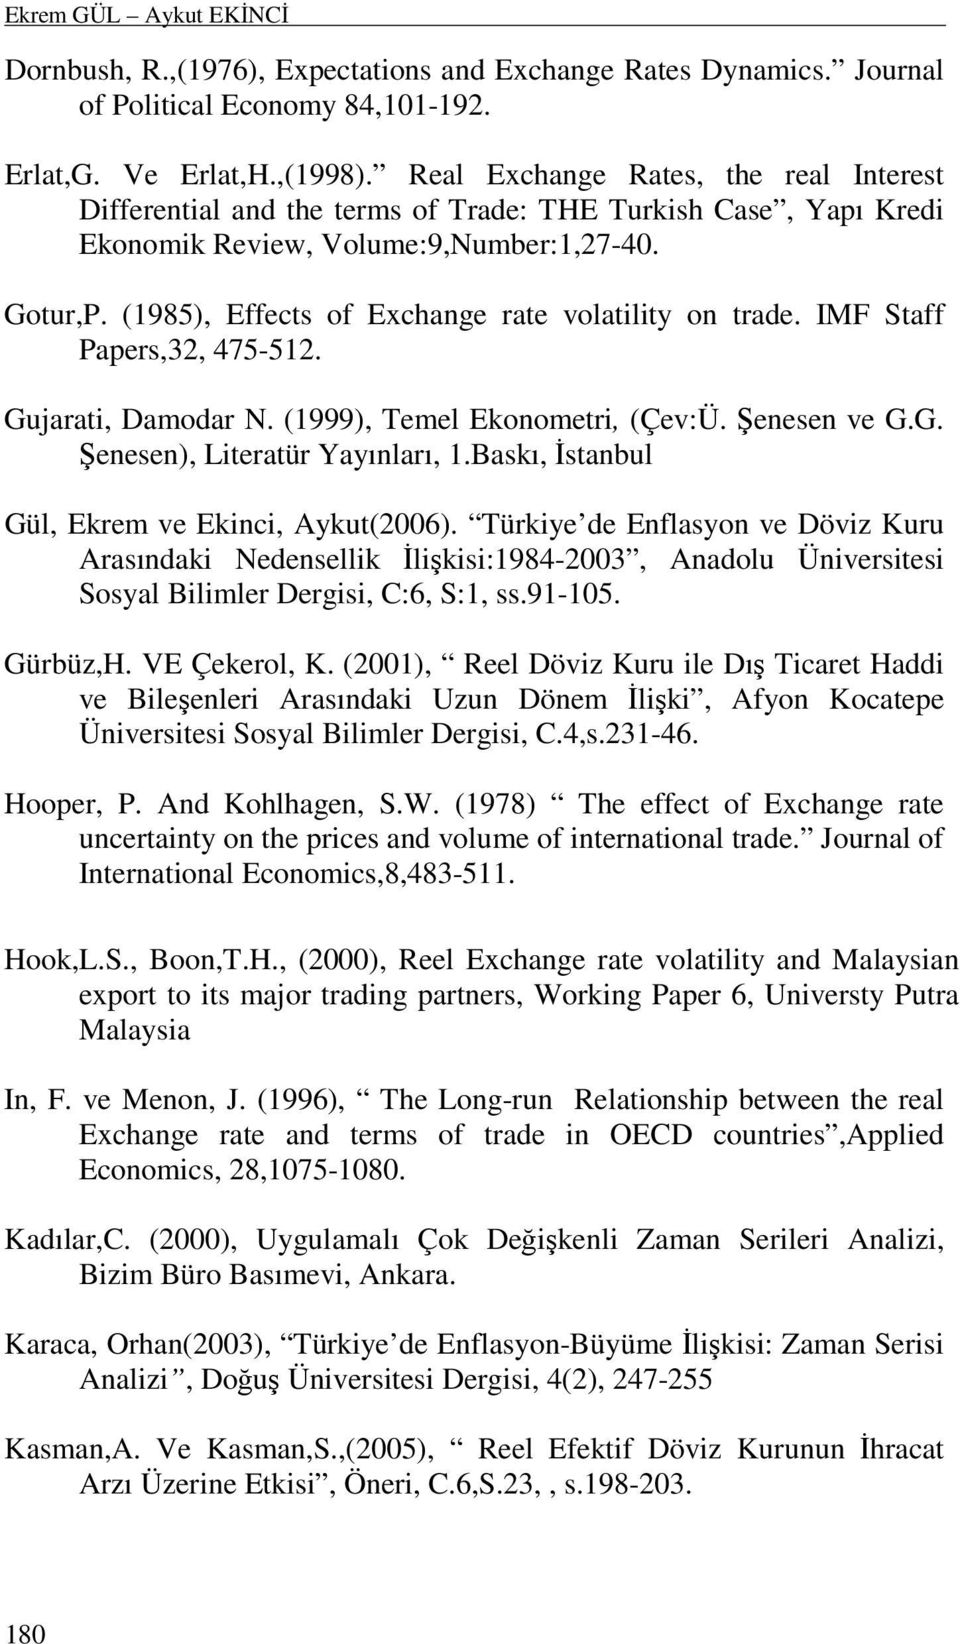 (985), Effects of Exchange rate volatility on trade. IMF Staff Papers,32, 475-52. Gujarati, Damodar N. (999), Temel Ekonometri, (Çev:Ü. Şenesen ve G.G. Şenesen), Literatür Yayınları,.